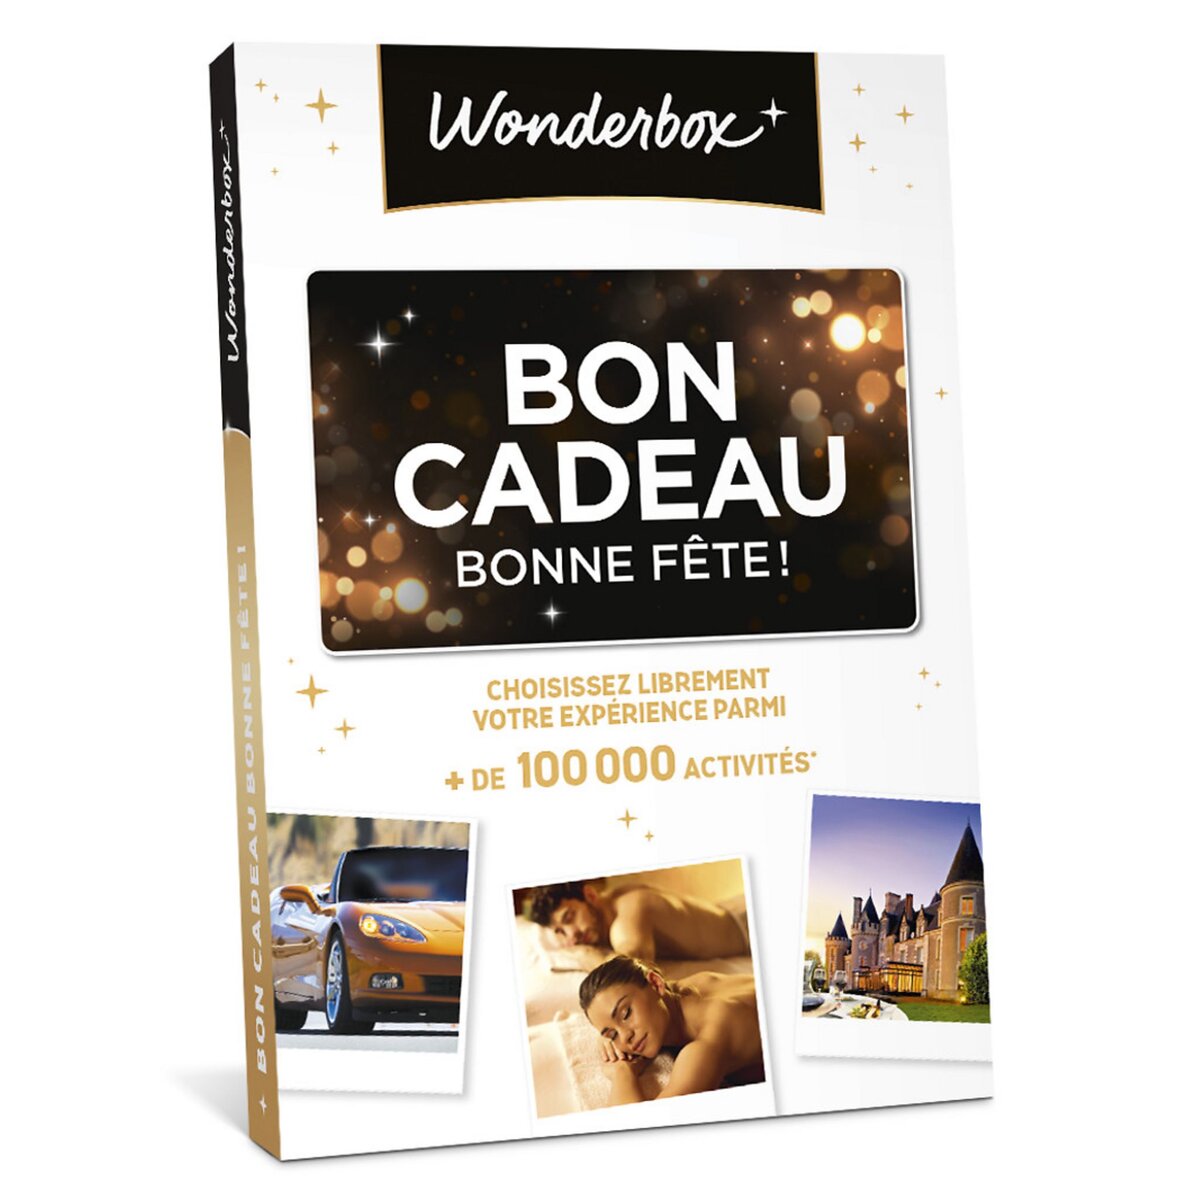 Wonderbox Bon Cadeau Bonne fête !